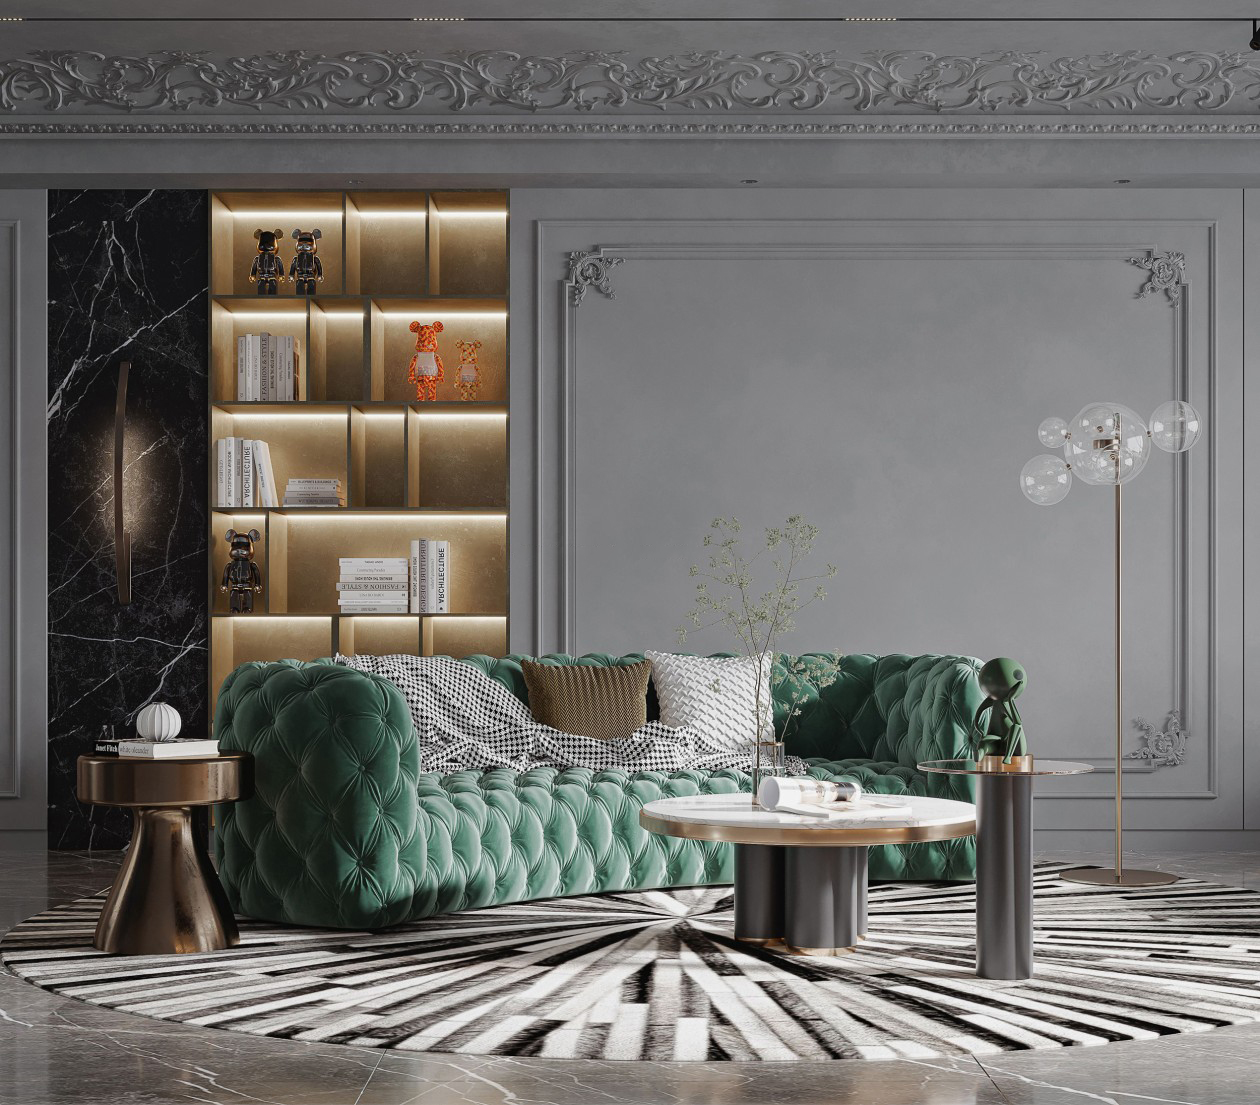 小空間也可以打造出古典奢華的客廳，優美的曲線、精美復古掛畫給人高貴優雅的氣息